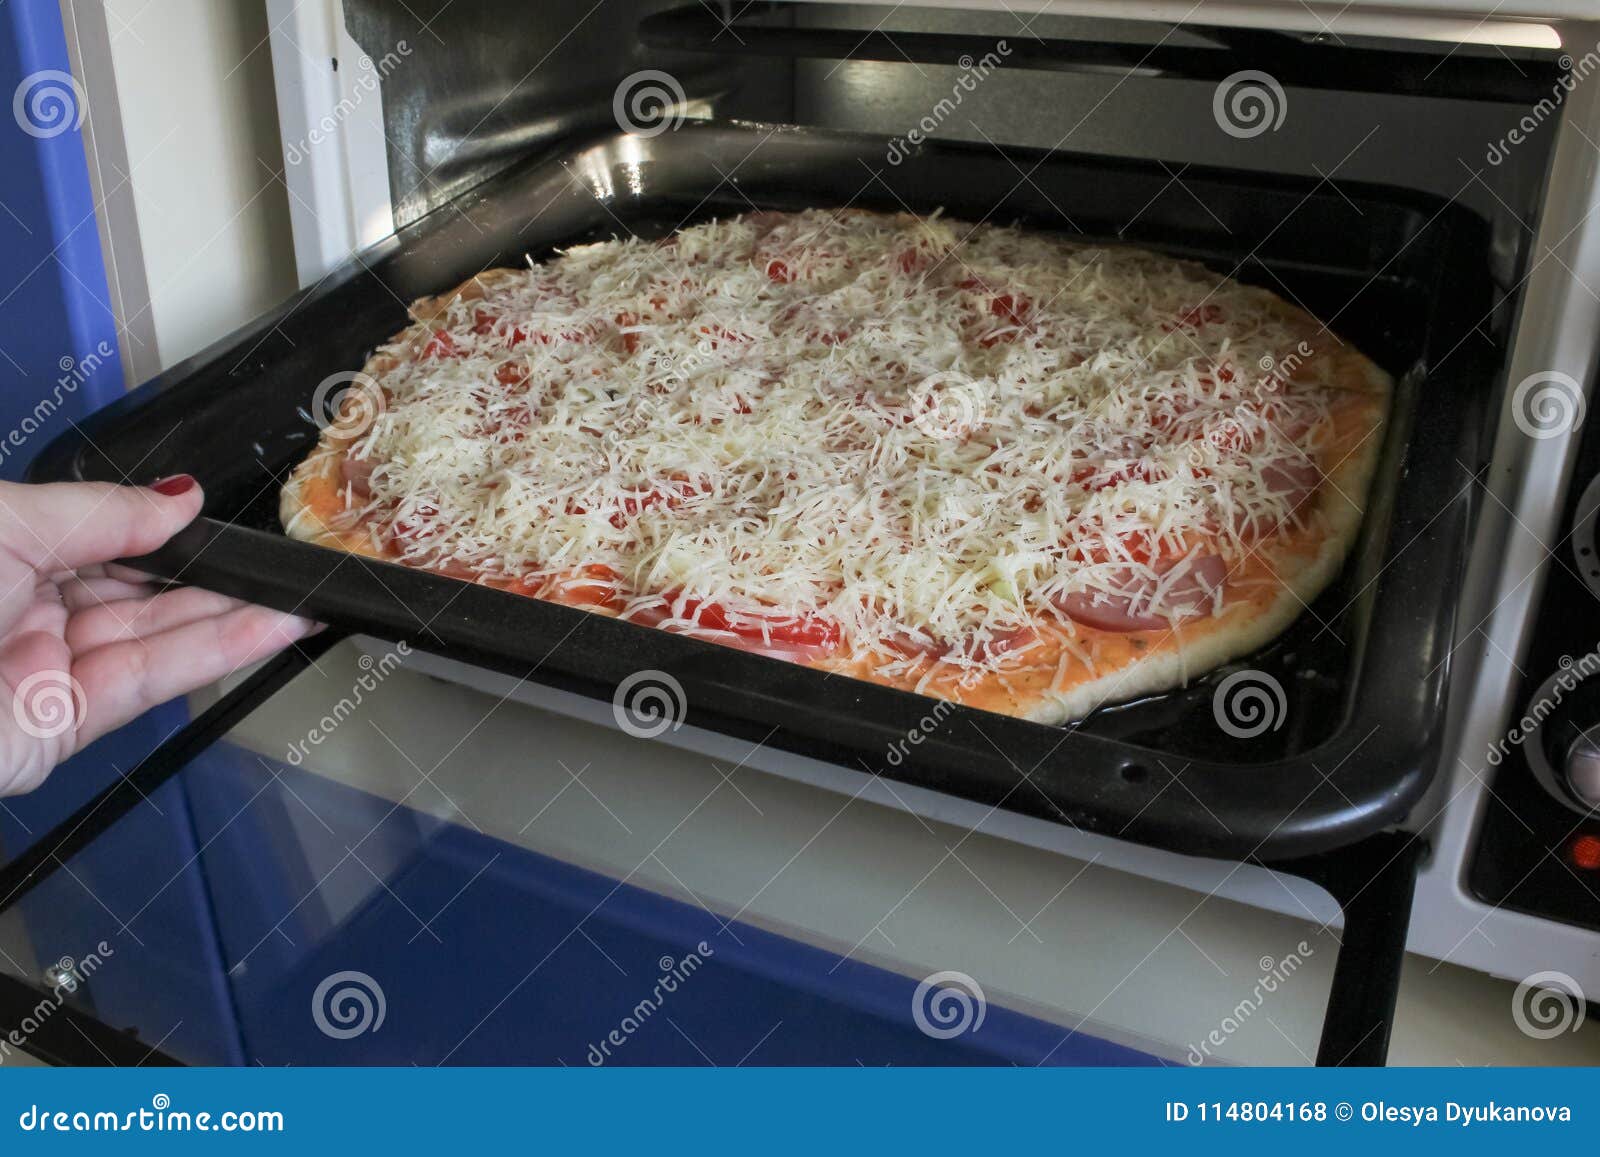 большая пицца на протвине в духовке фото 97